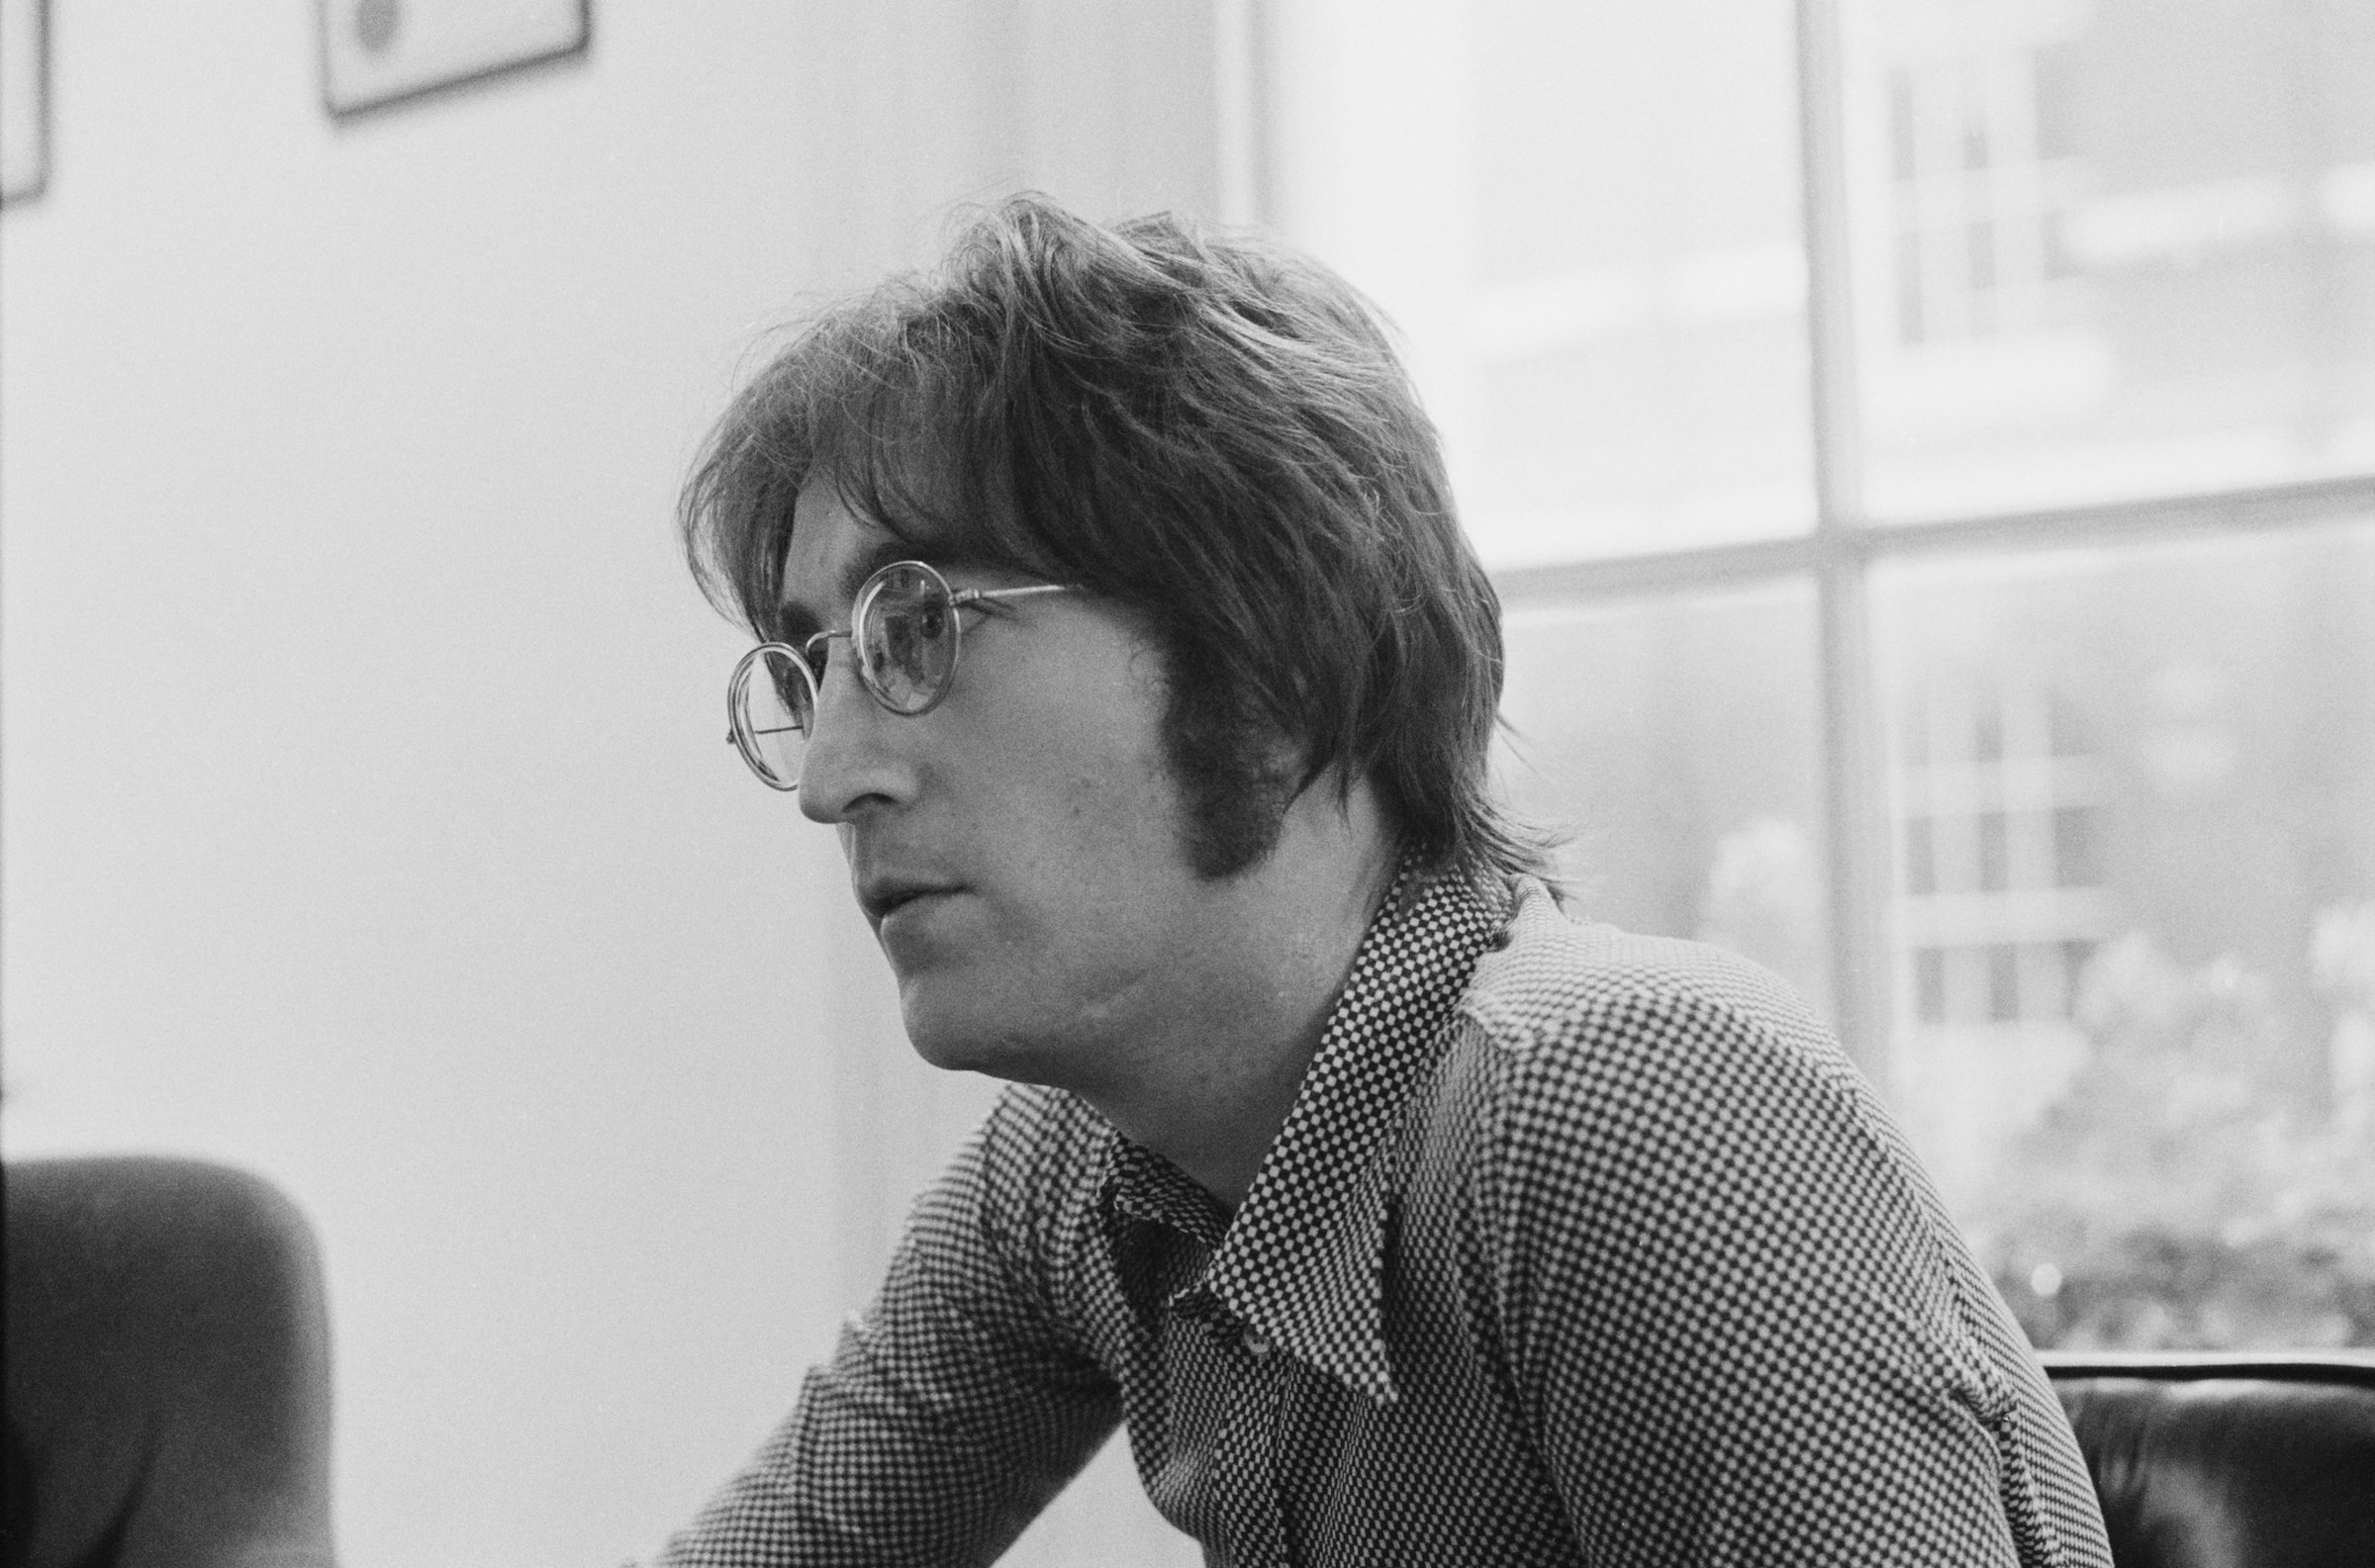 Former Beatle John Lennon at his home, Tittenhurst Park in 1971